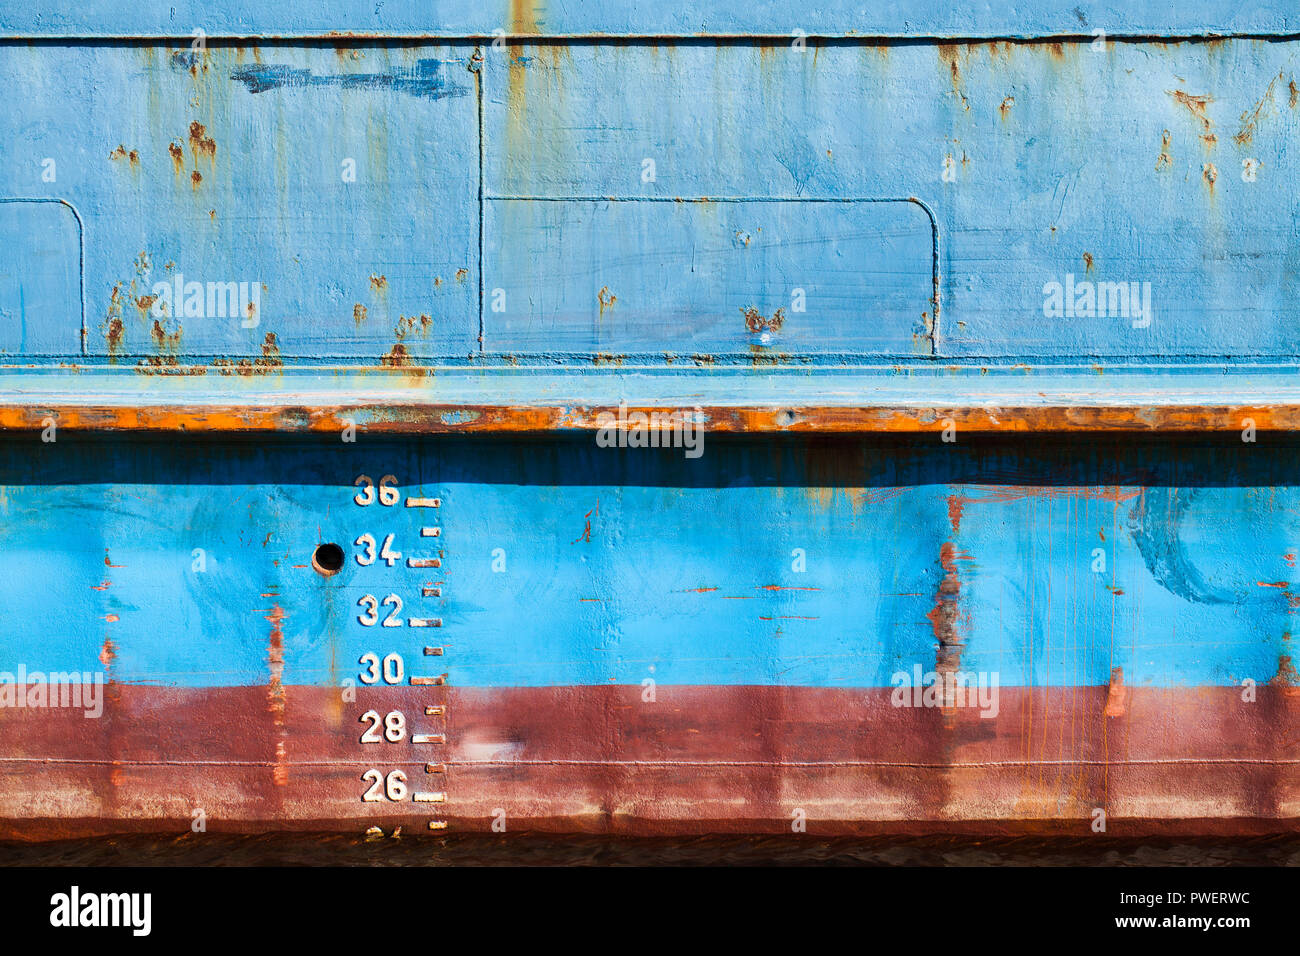 Blue cargo ship hull avec ligne de flottaison rouge et marques de tirant d'eau, texture de fond, vue de face Banque D'Images